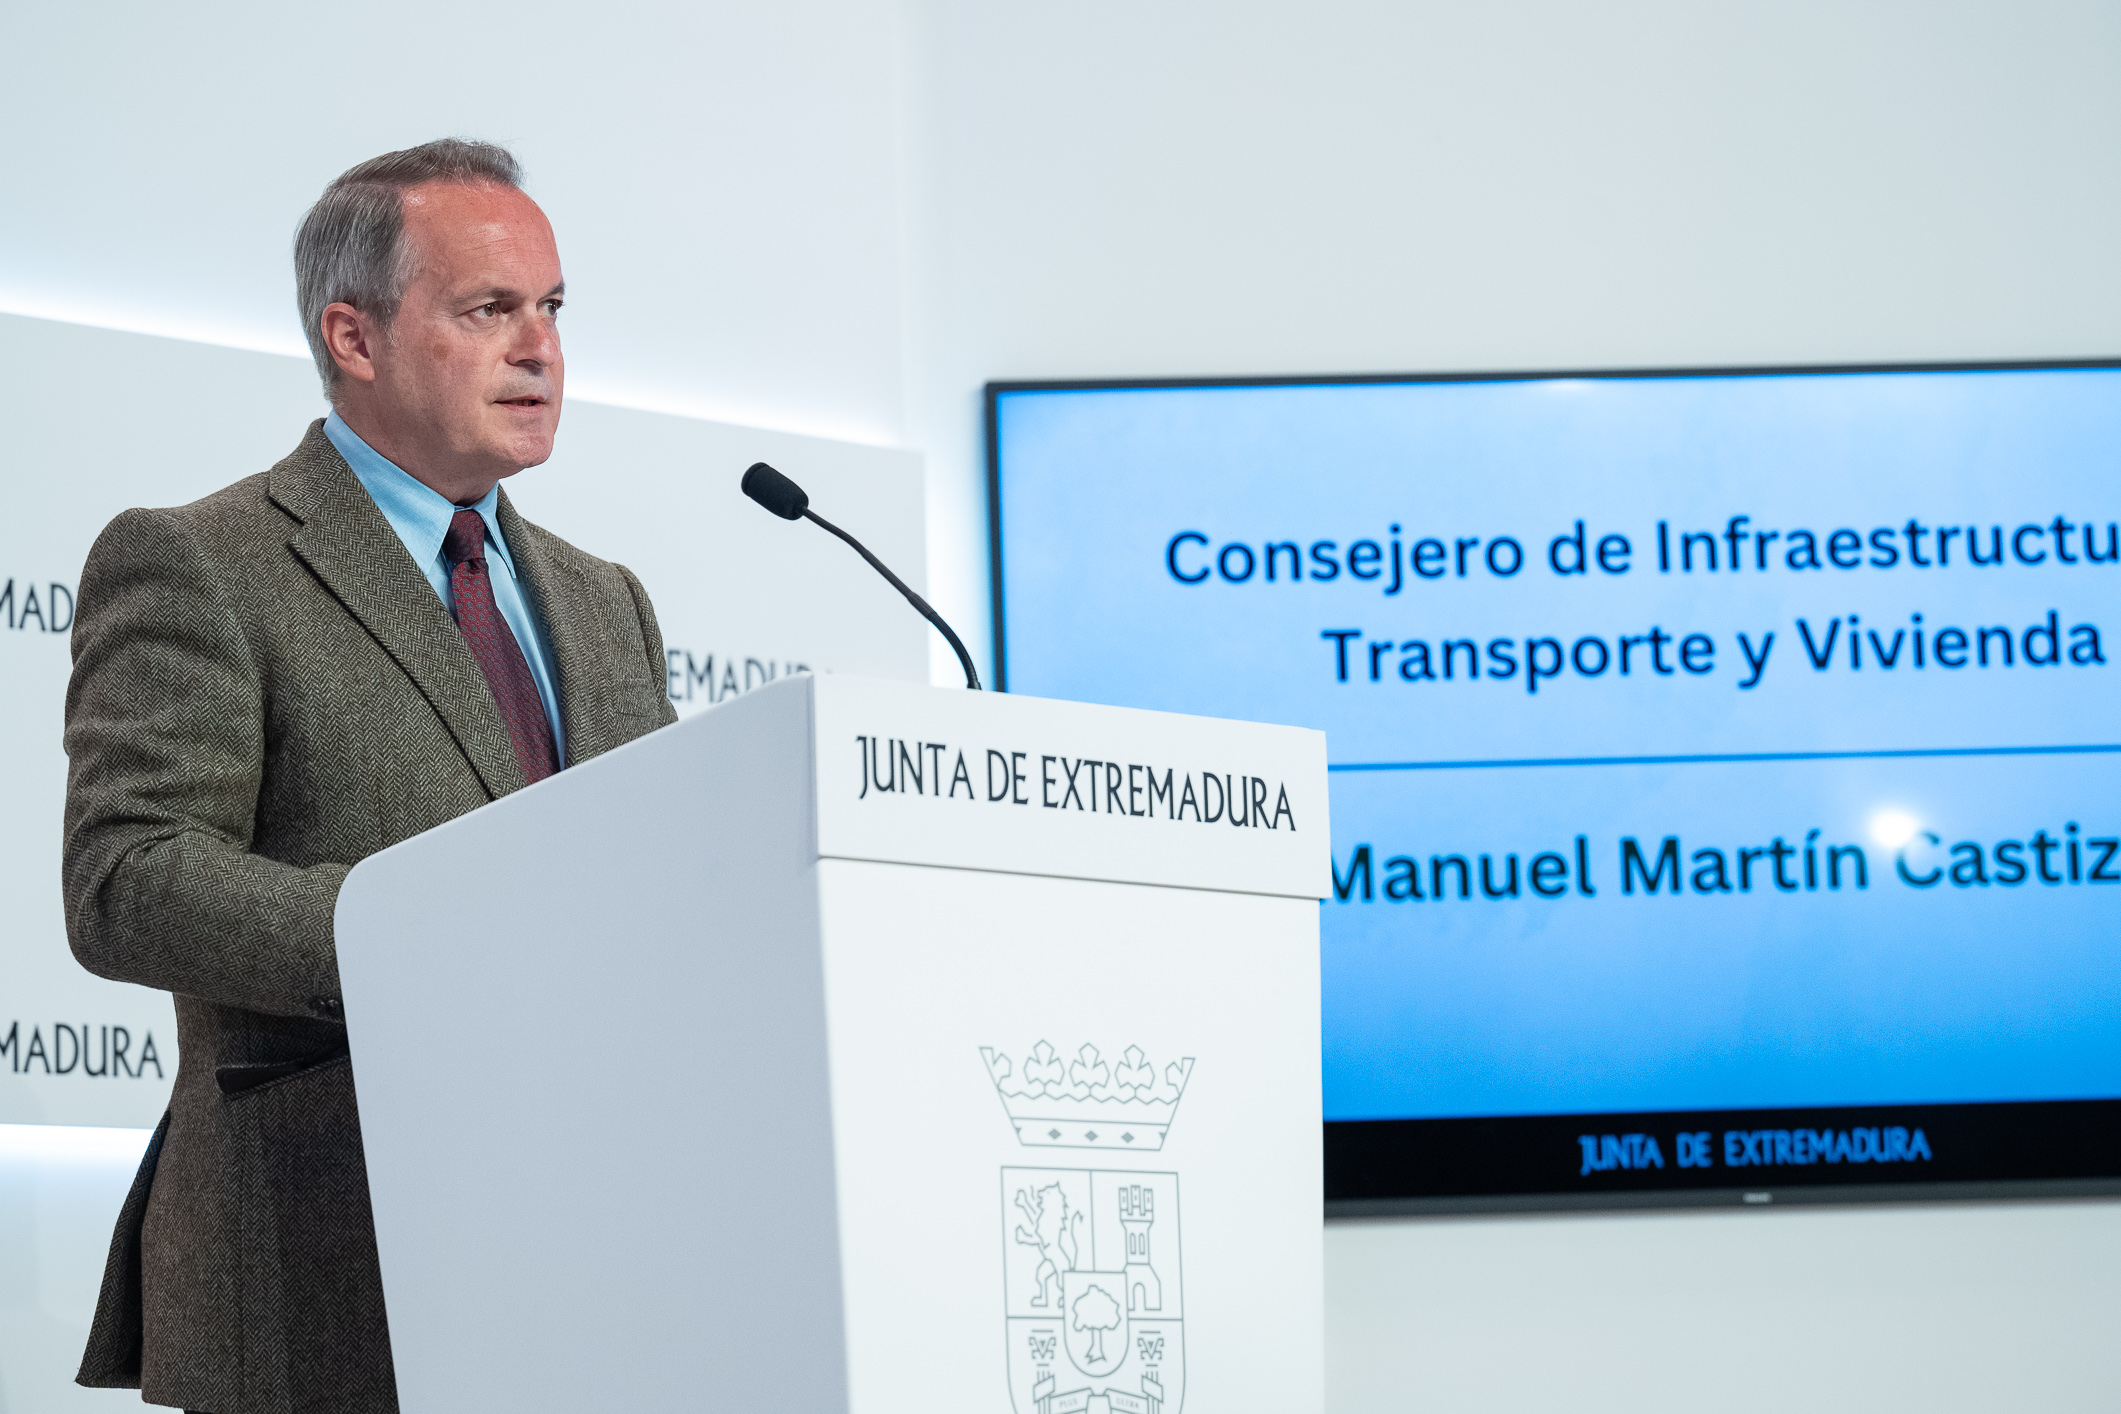 El consejero de Infraestructuras, Transporte y Vivienda, Manuel Martín Castizo, durante la rueda de prensa.